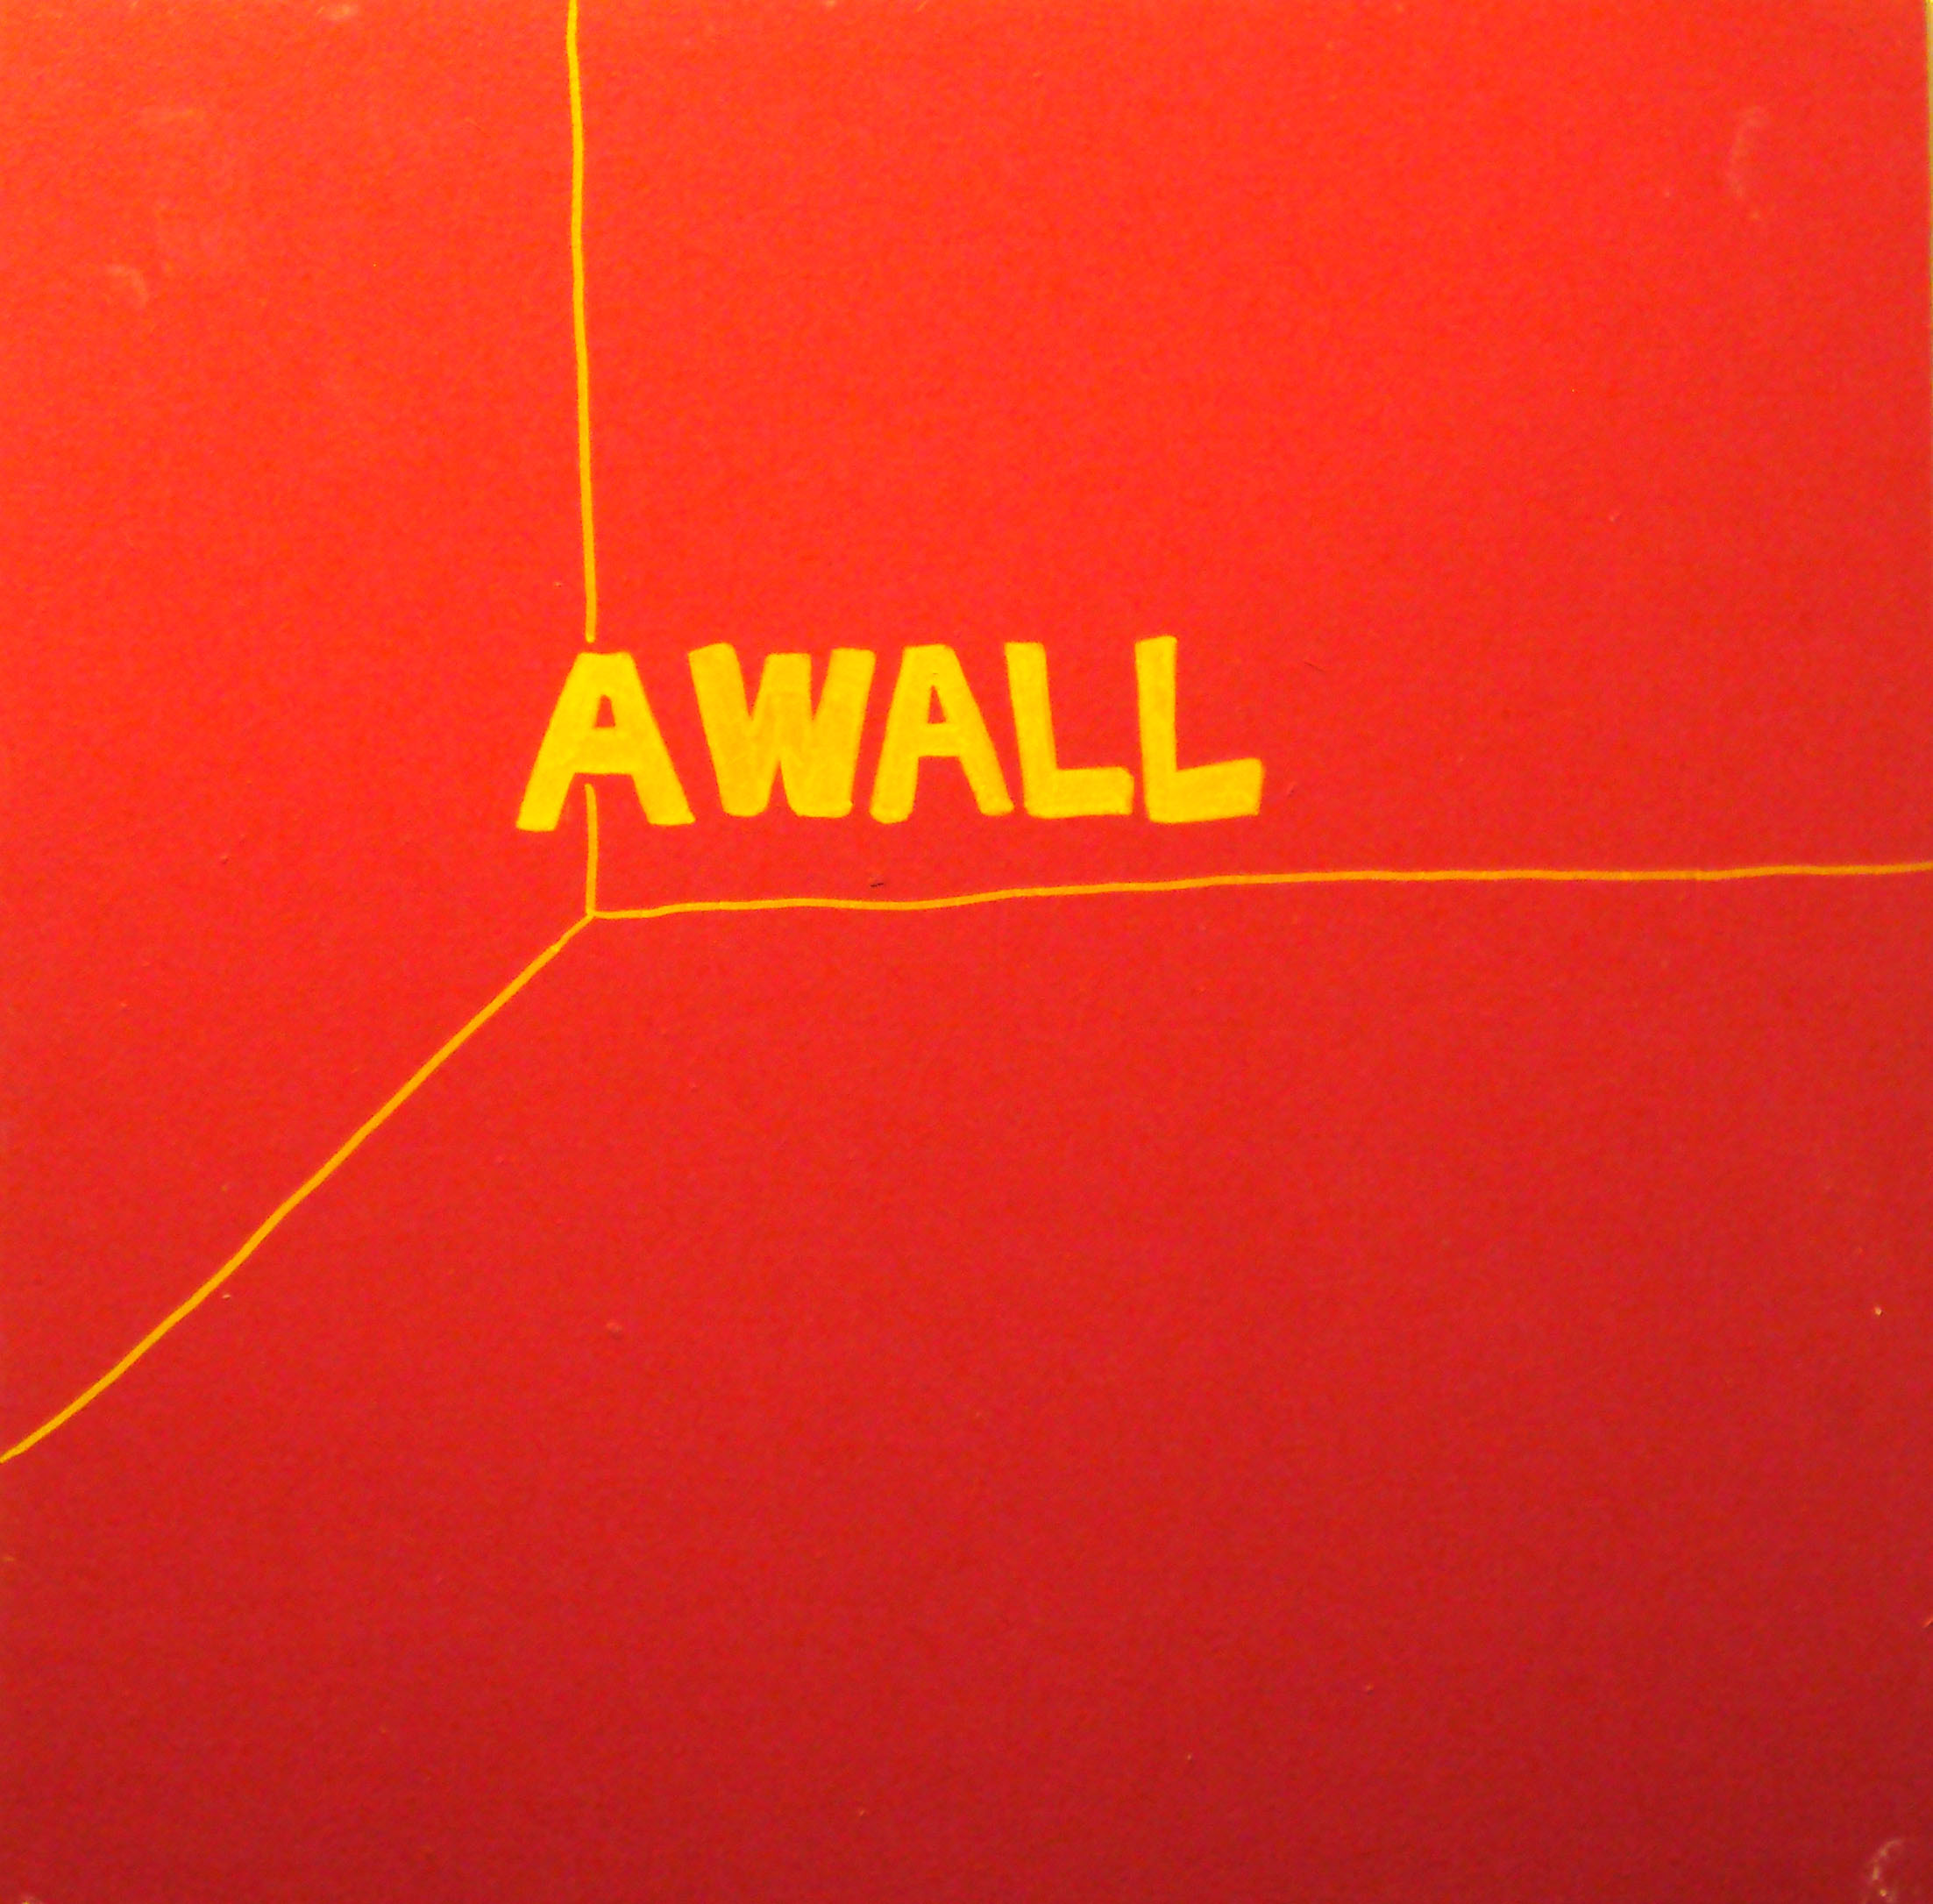   AWALL  acrylic on wood panel 24” x 24” 2002 